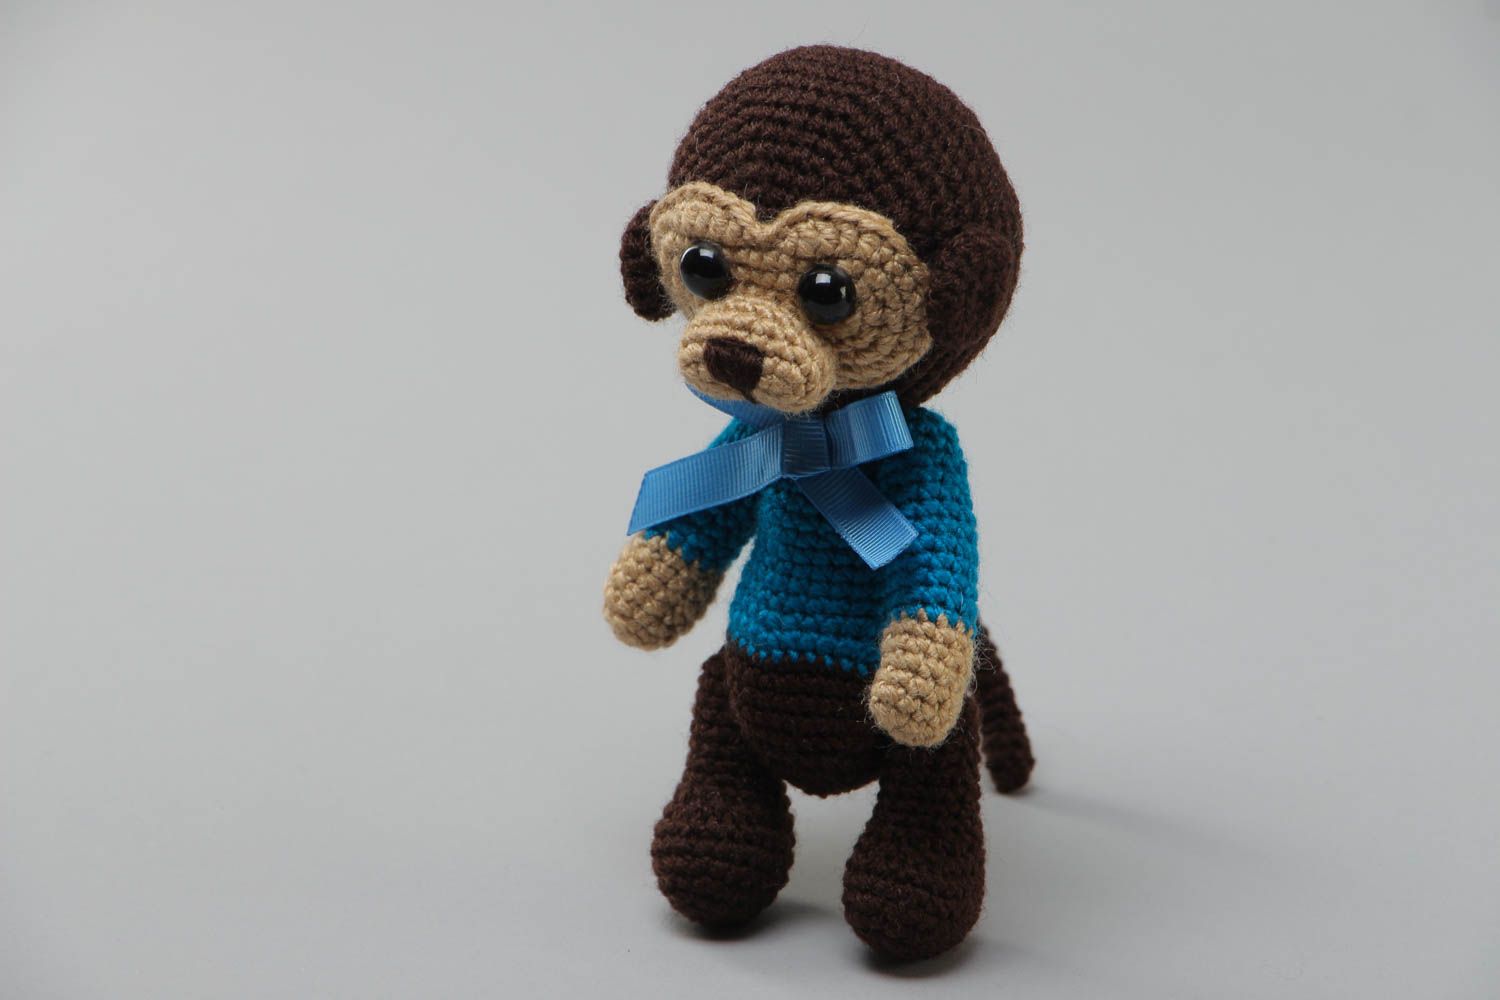 Мягкая вязаная игрушка в виде обезьянки в голубом свитере маленькая хэнд мейд фото 2